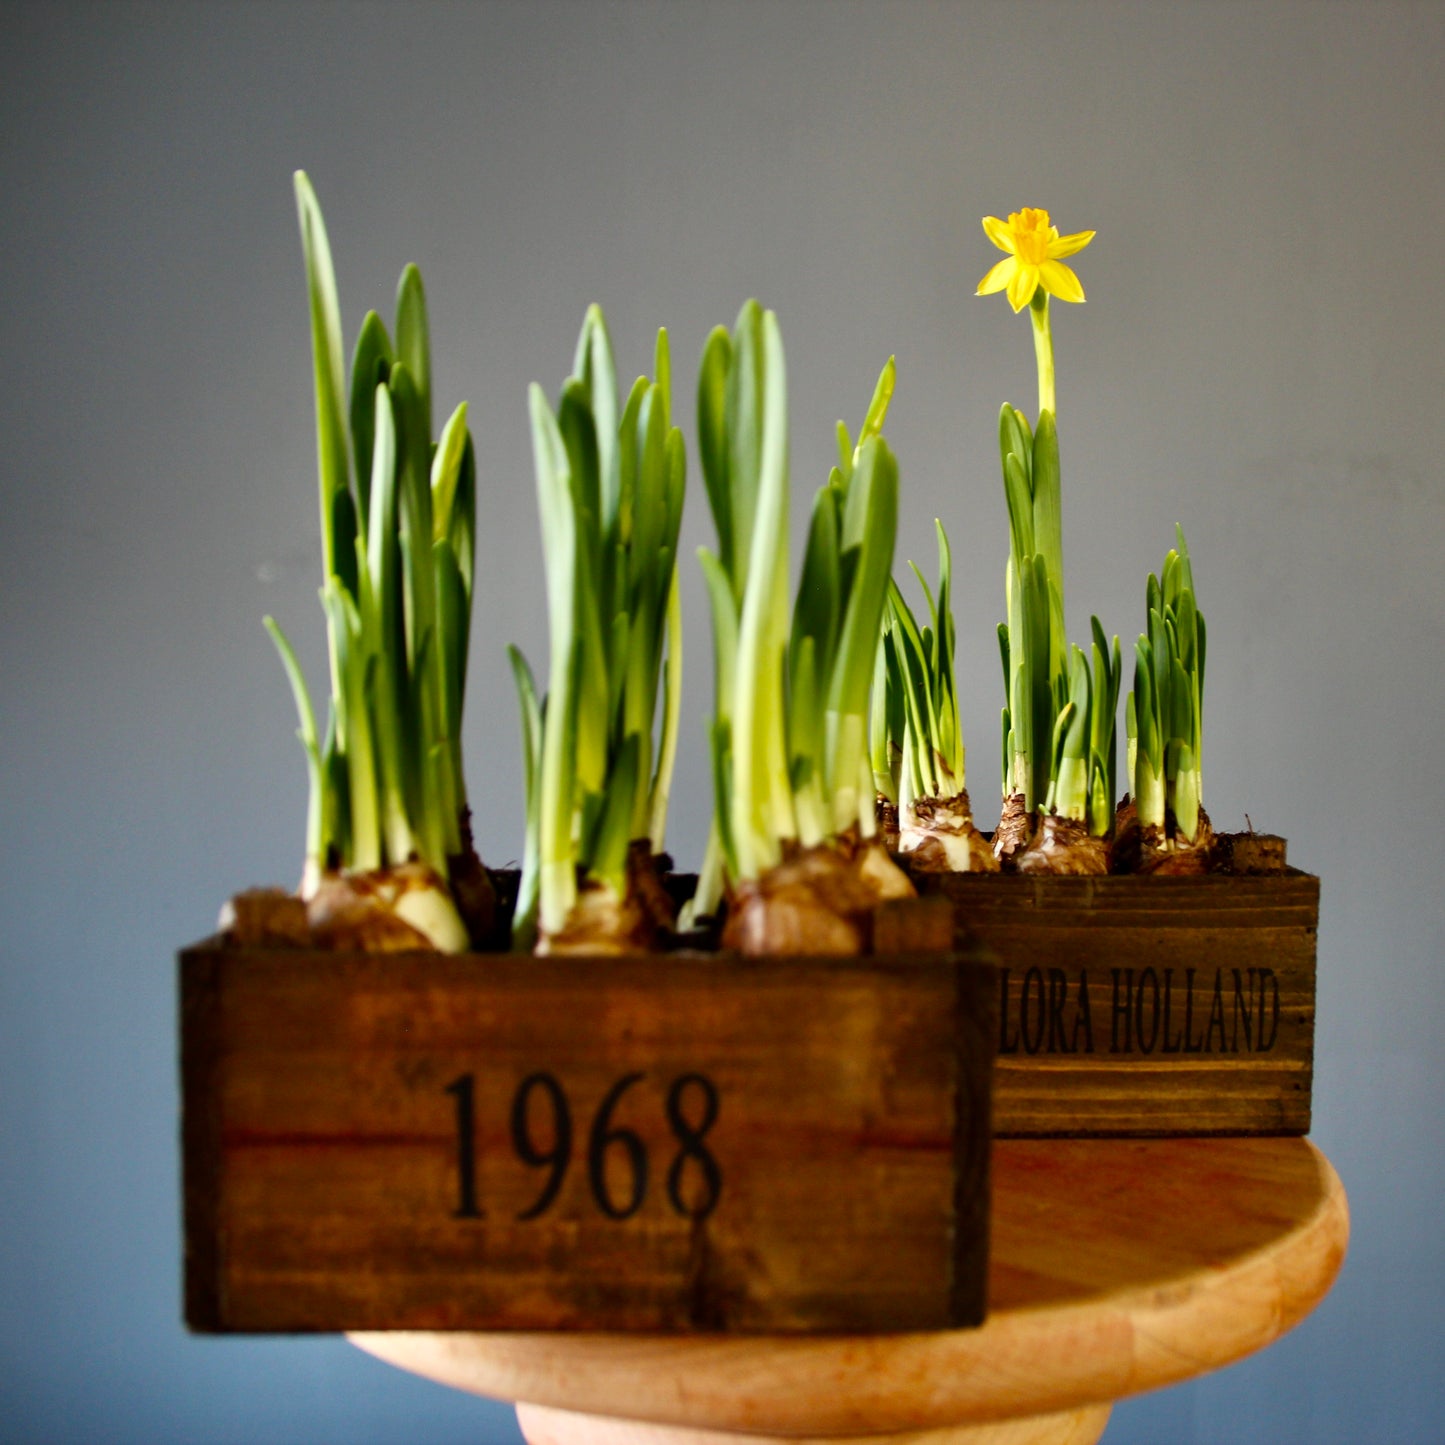 Blooming Daffodils